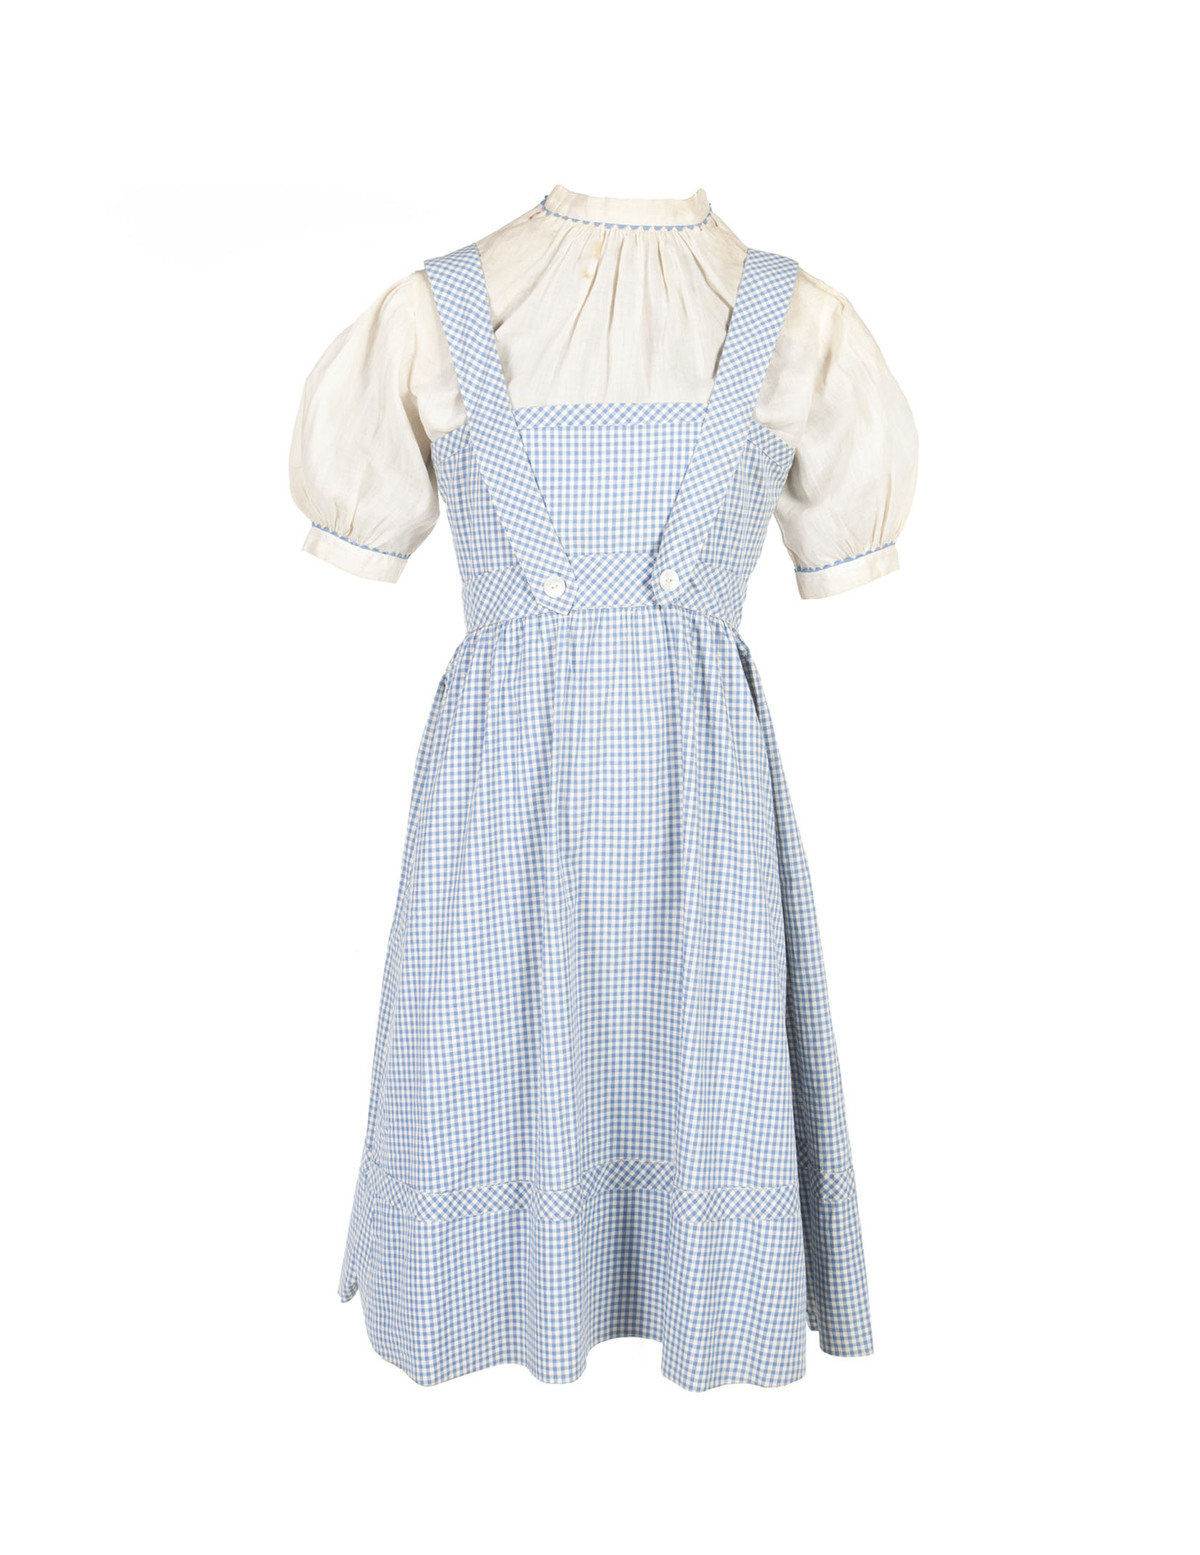 Платье Дороти продано за 480 тысяч долларов